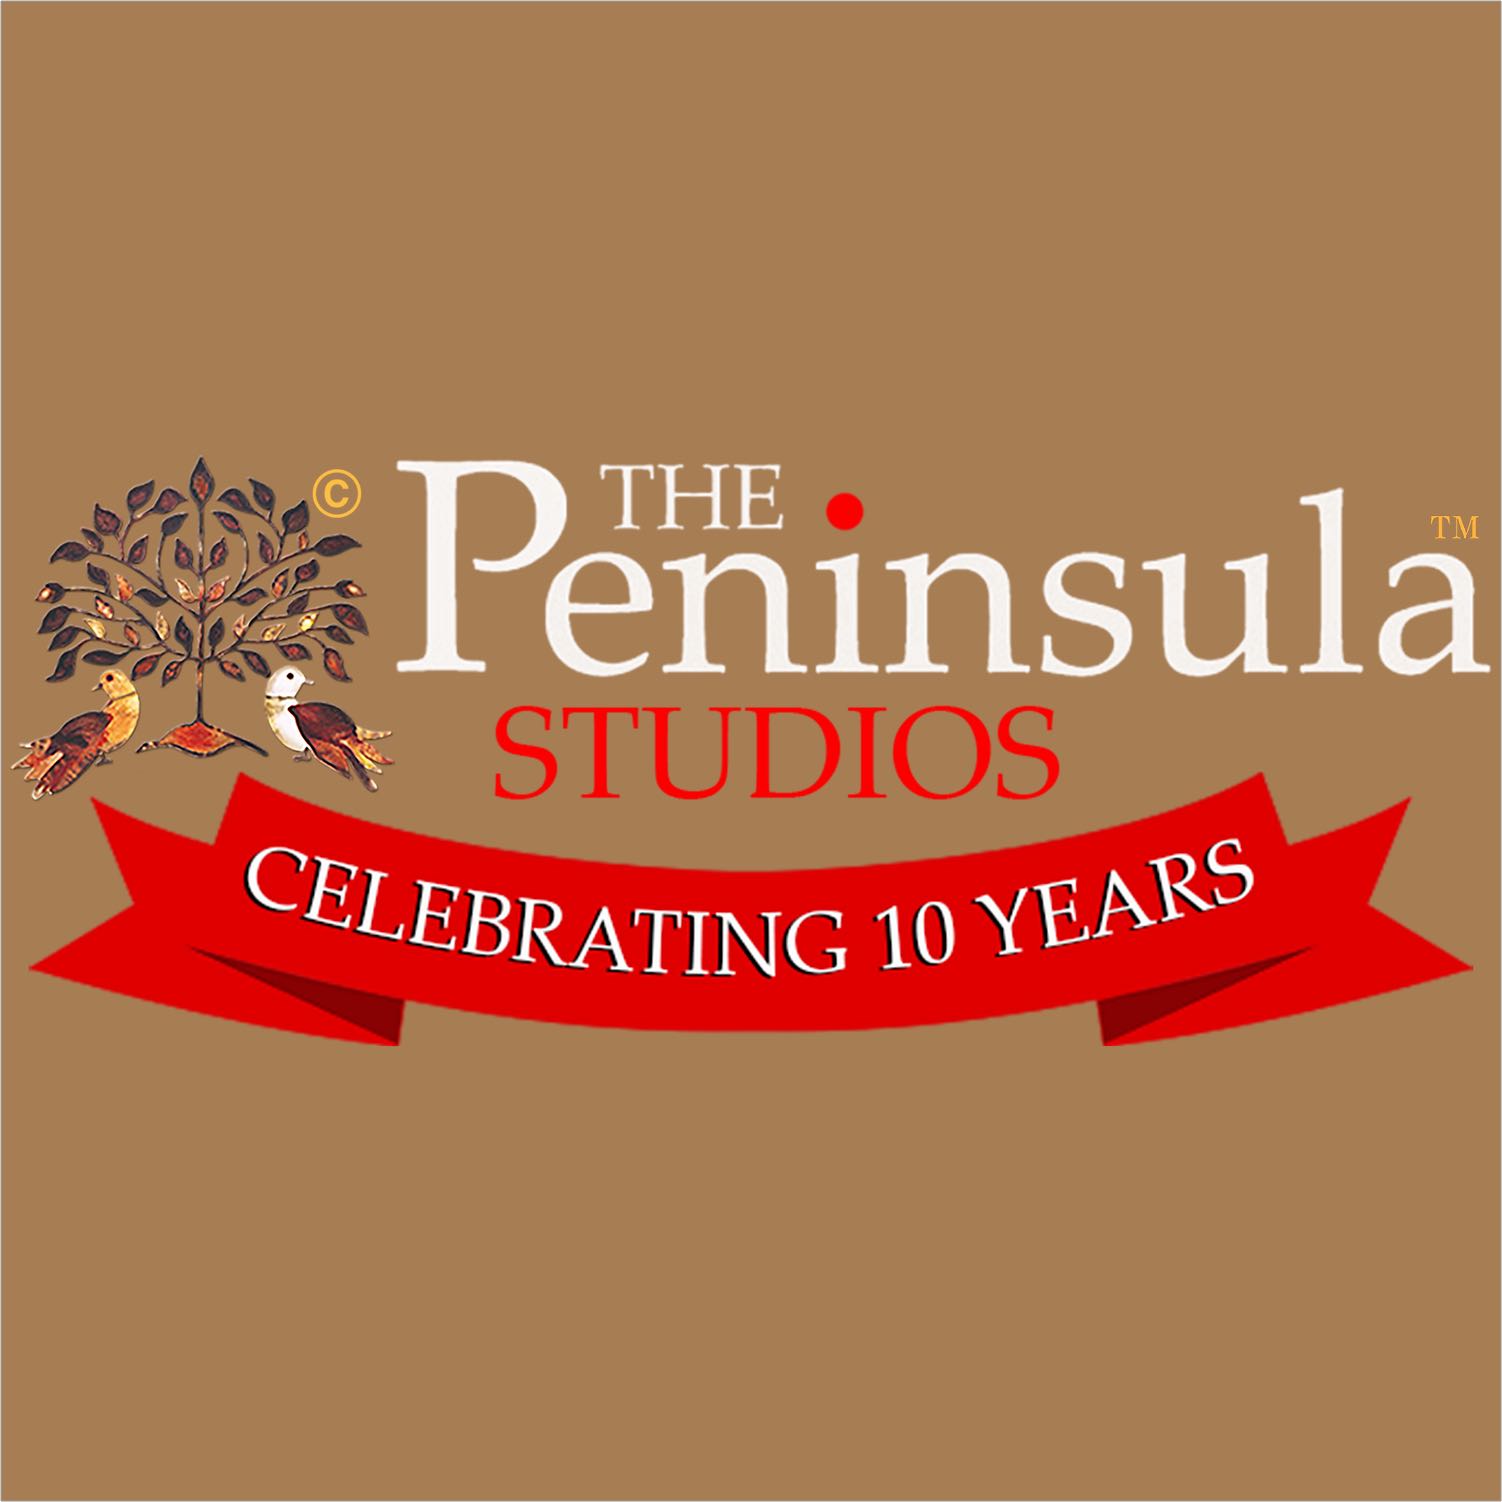 The Peninsula Studios